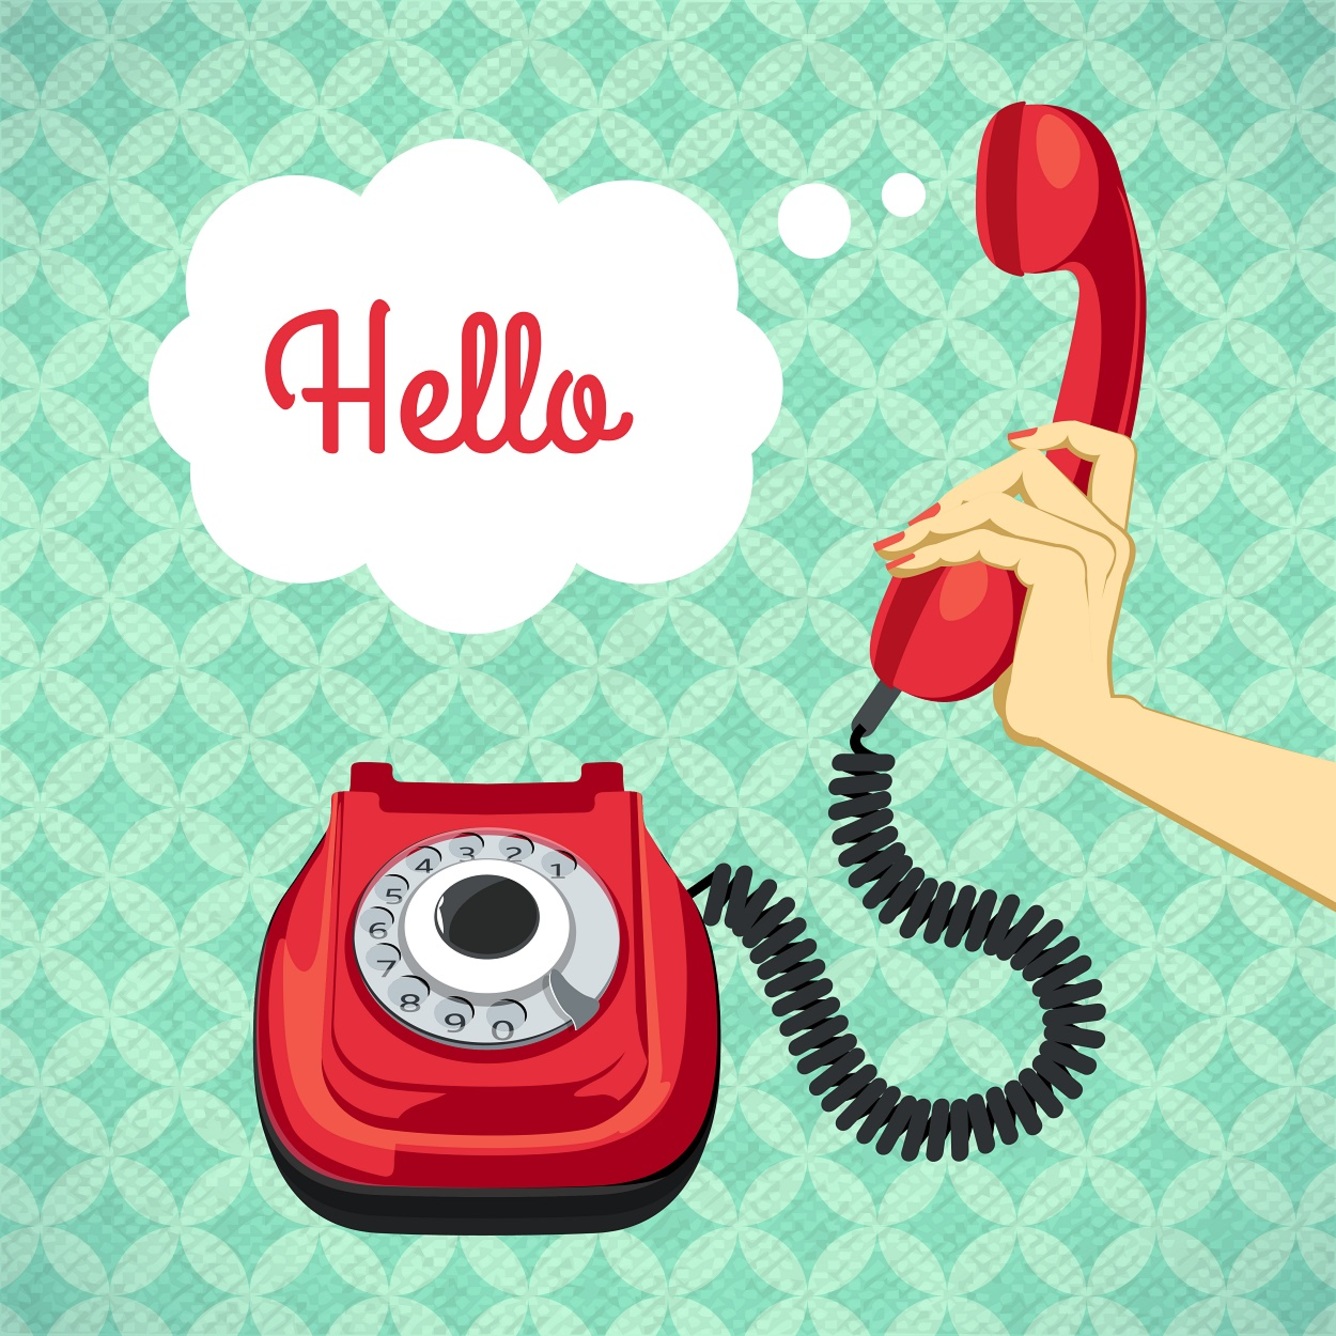 Rozmowa telefoniczna po angielsku - przydatne słownictwo i zwroty